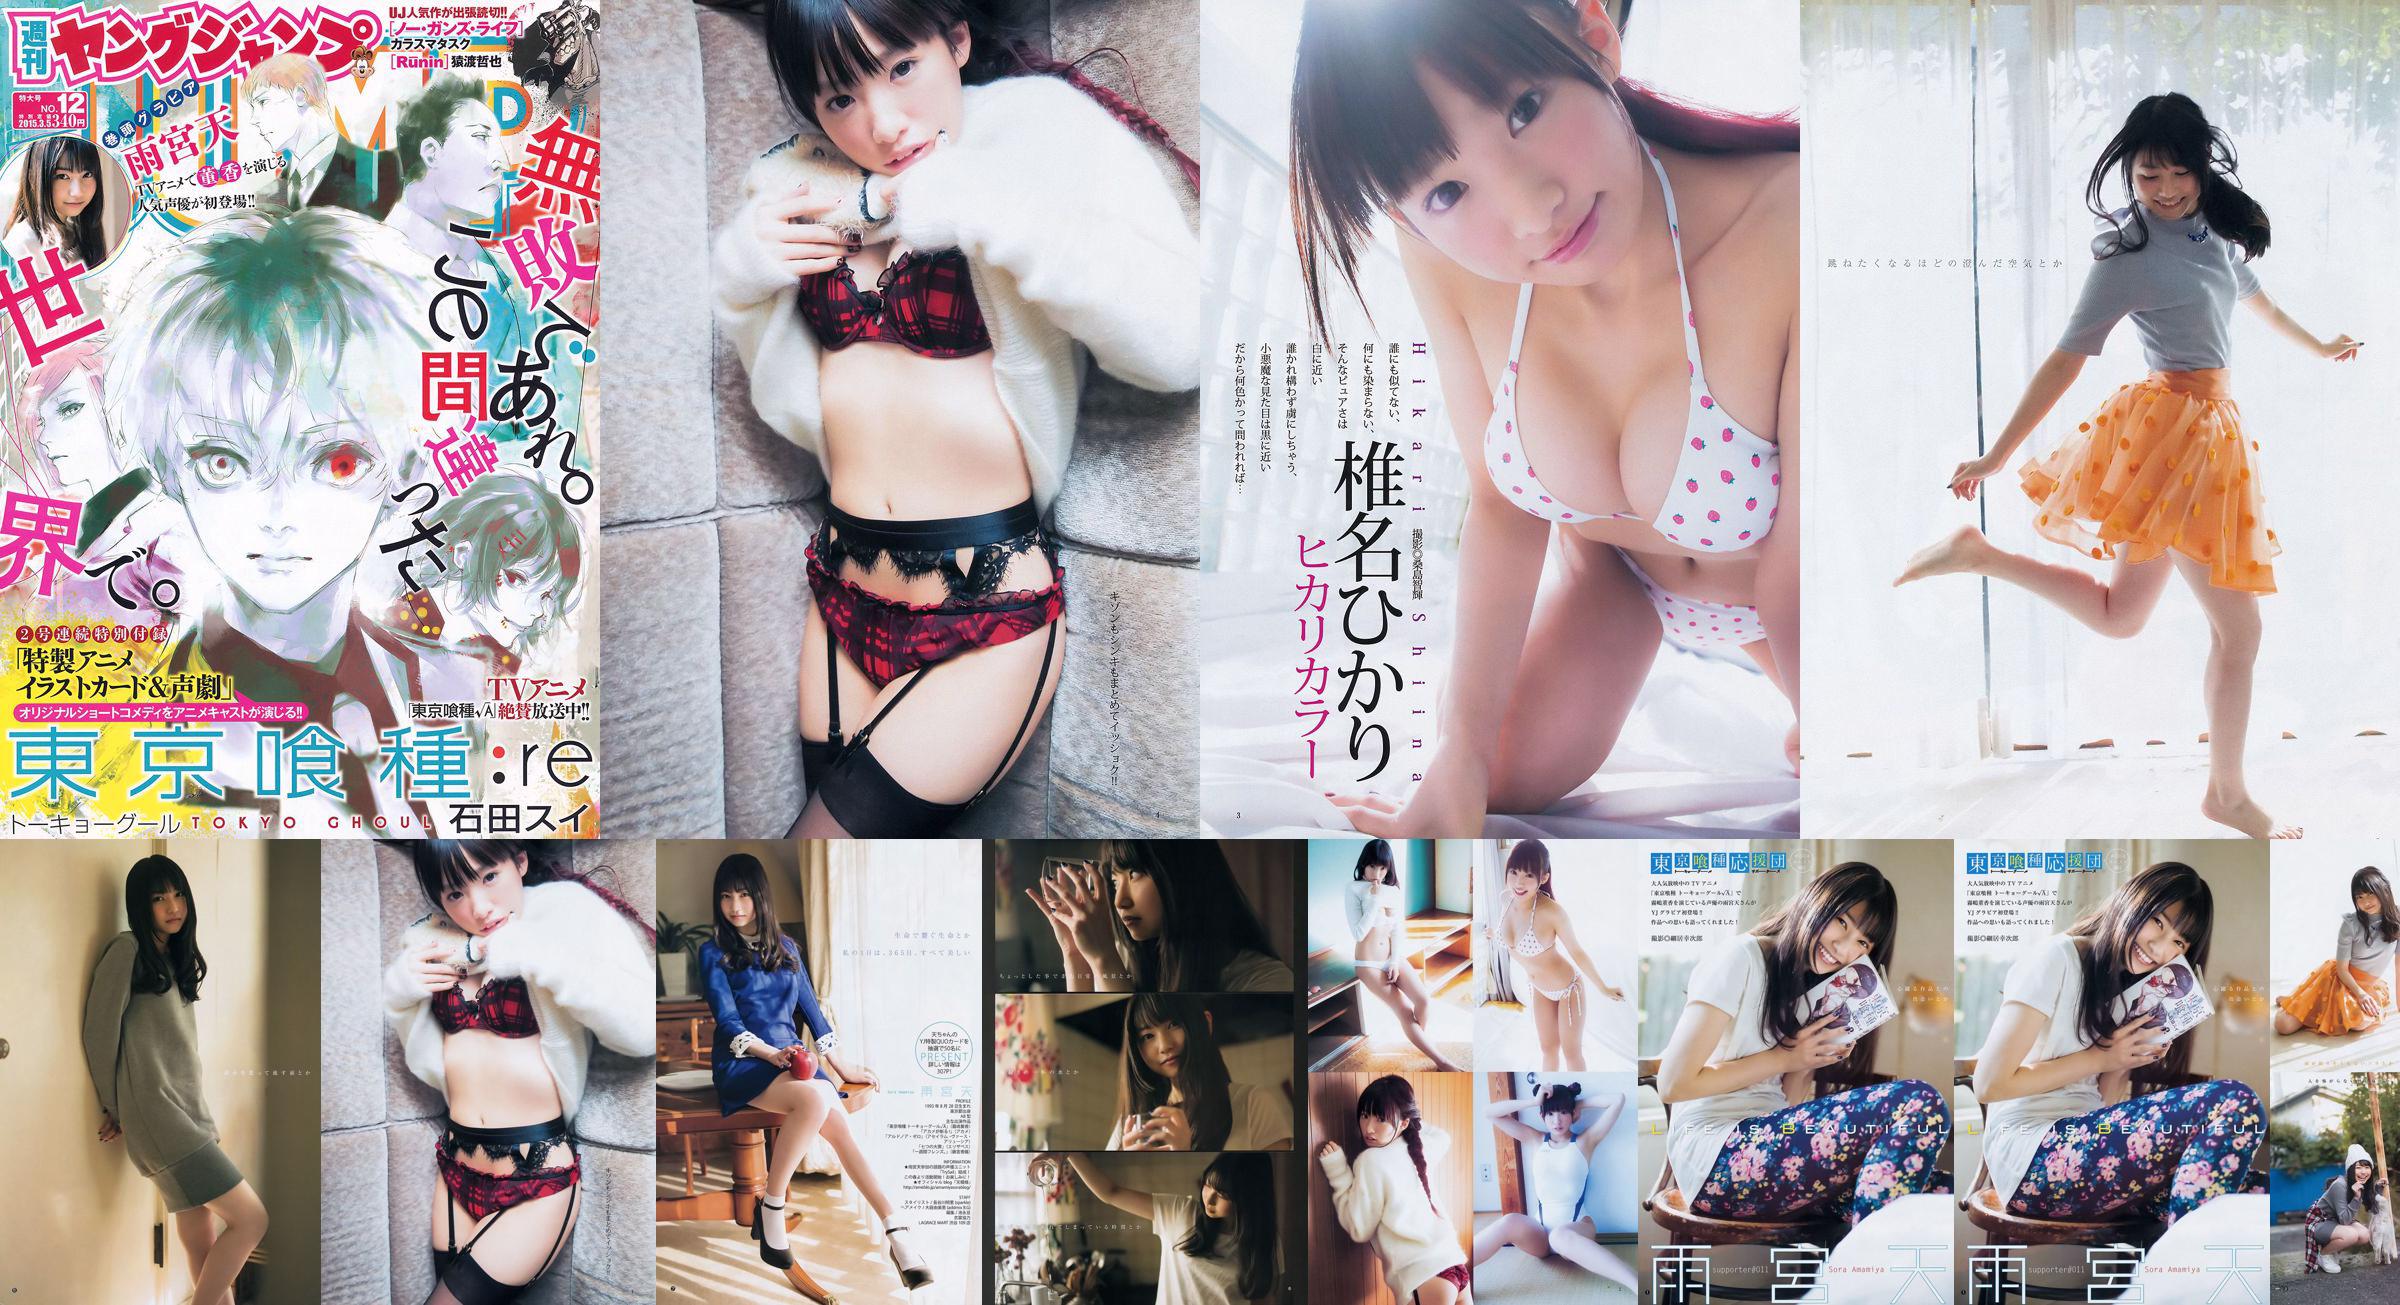 Amamiya Tian Shiina ひかり [Weekly Young Jump] 2015 No.12 Photo Magazine No.4366a7 Página 3